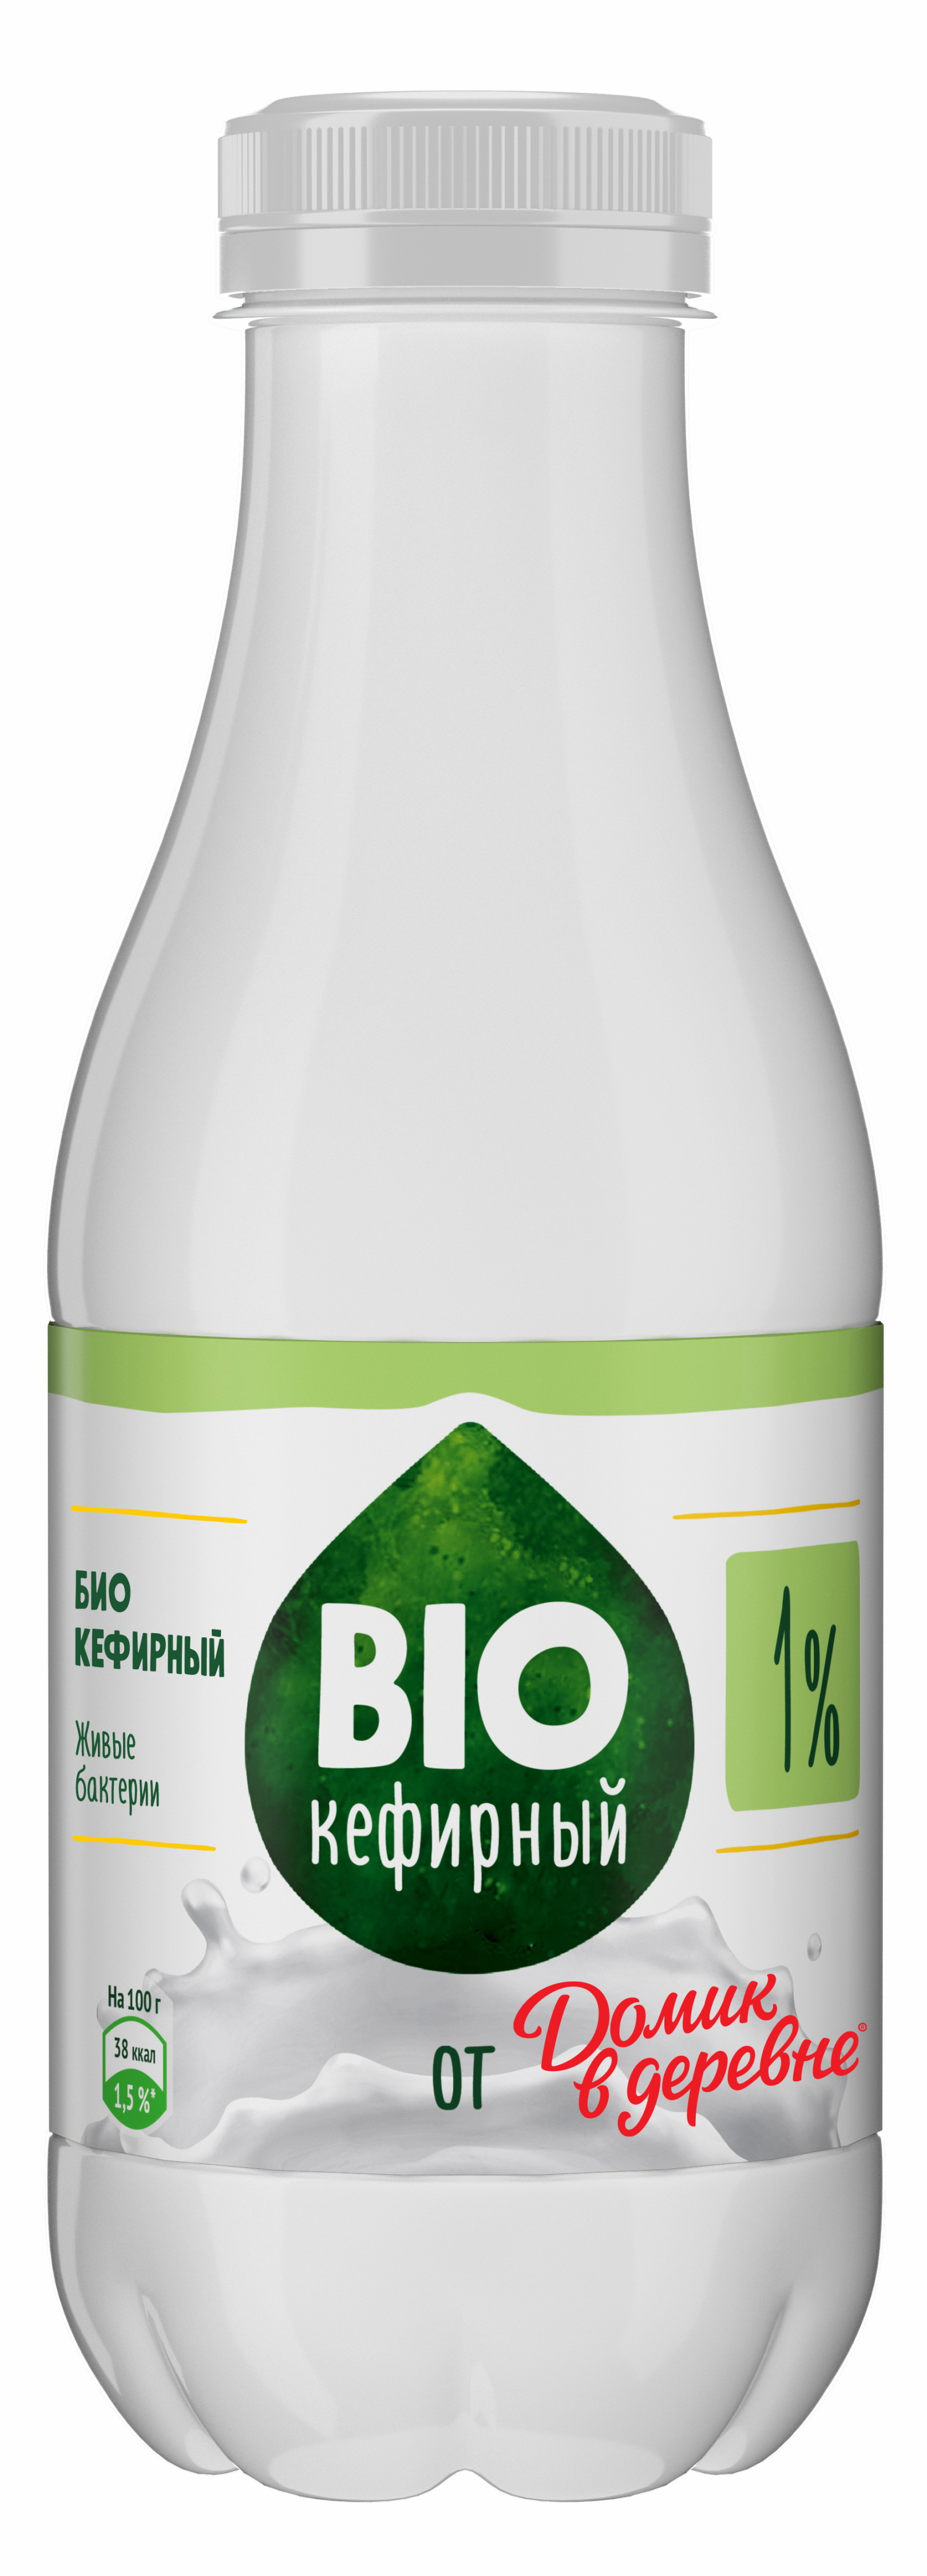 Продукт Биокефирный Домик в Деревне 1% 450г